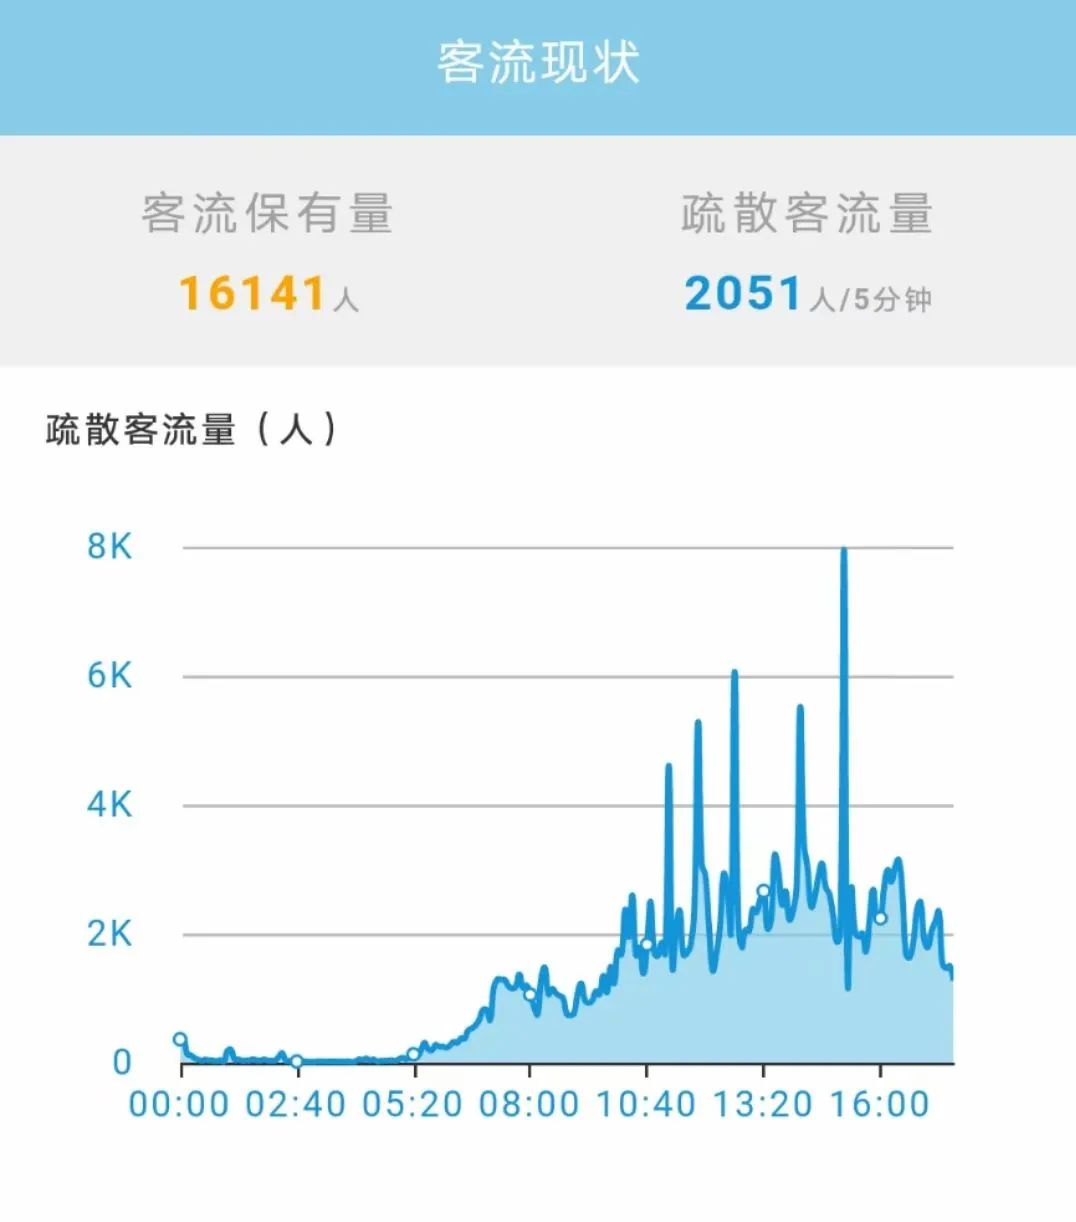 海融软件——“郑州东站枢纽客流疏散协调联动平台”成功上线